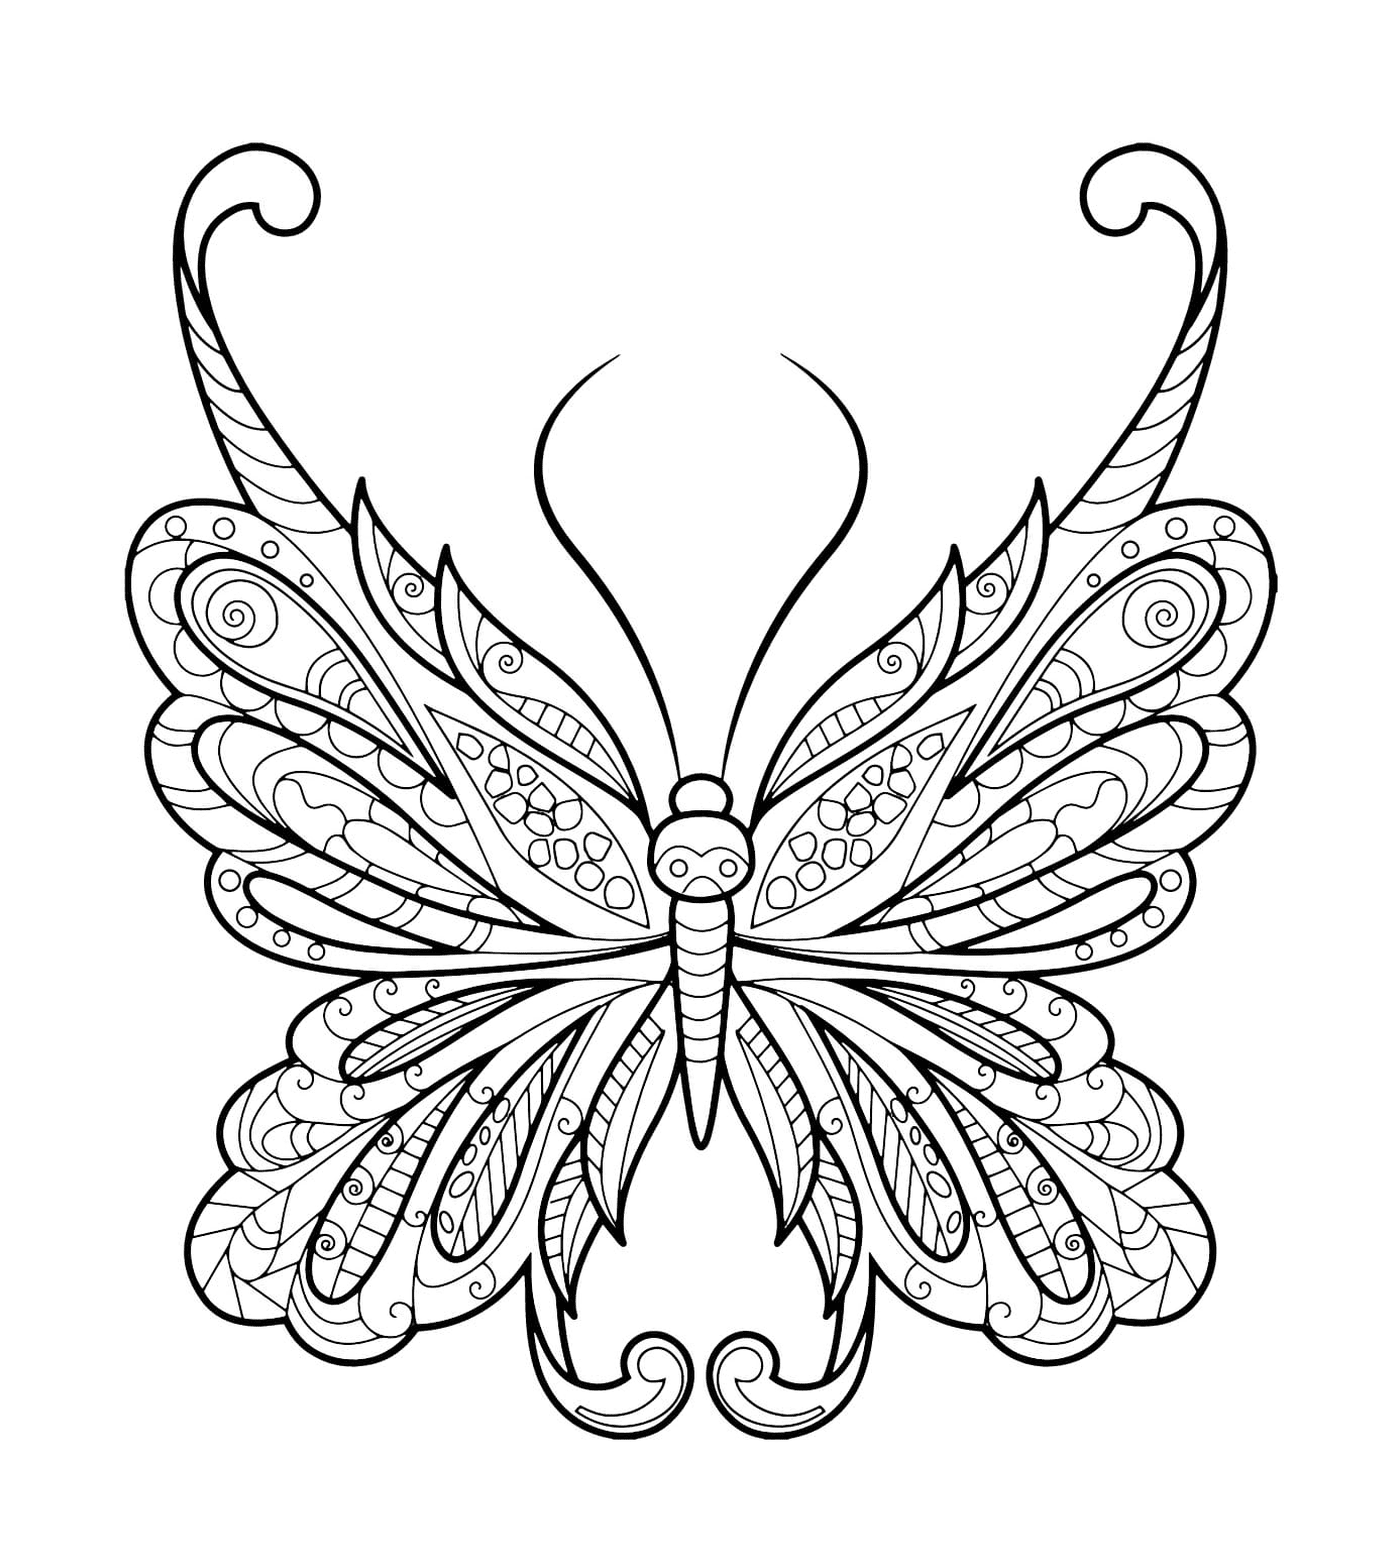  Zentangle farfalla con motivi bellissimi 